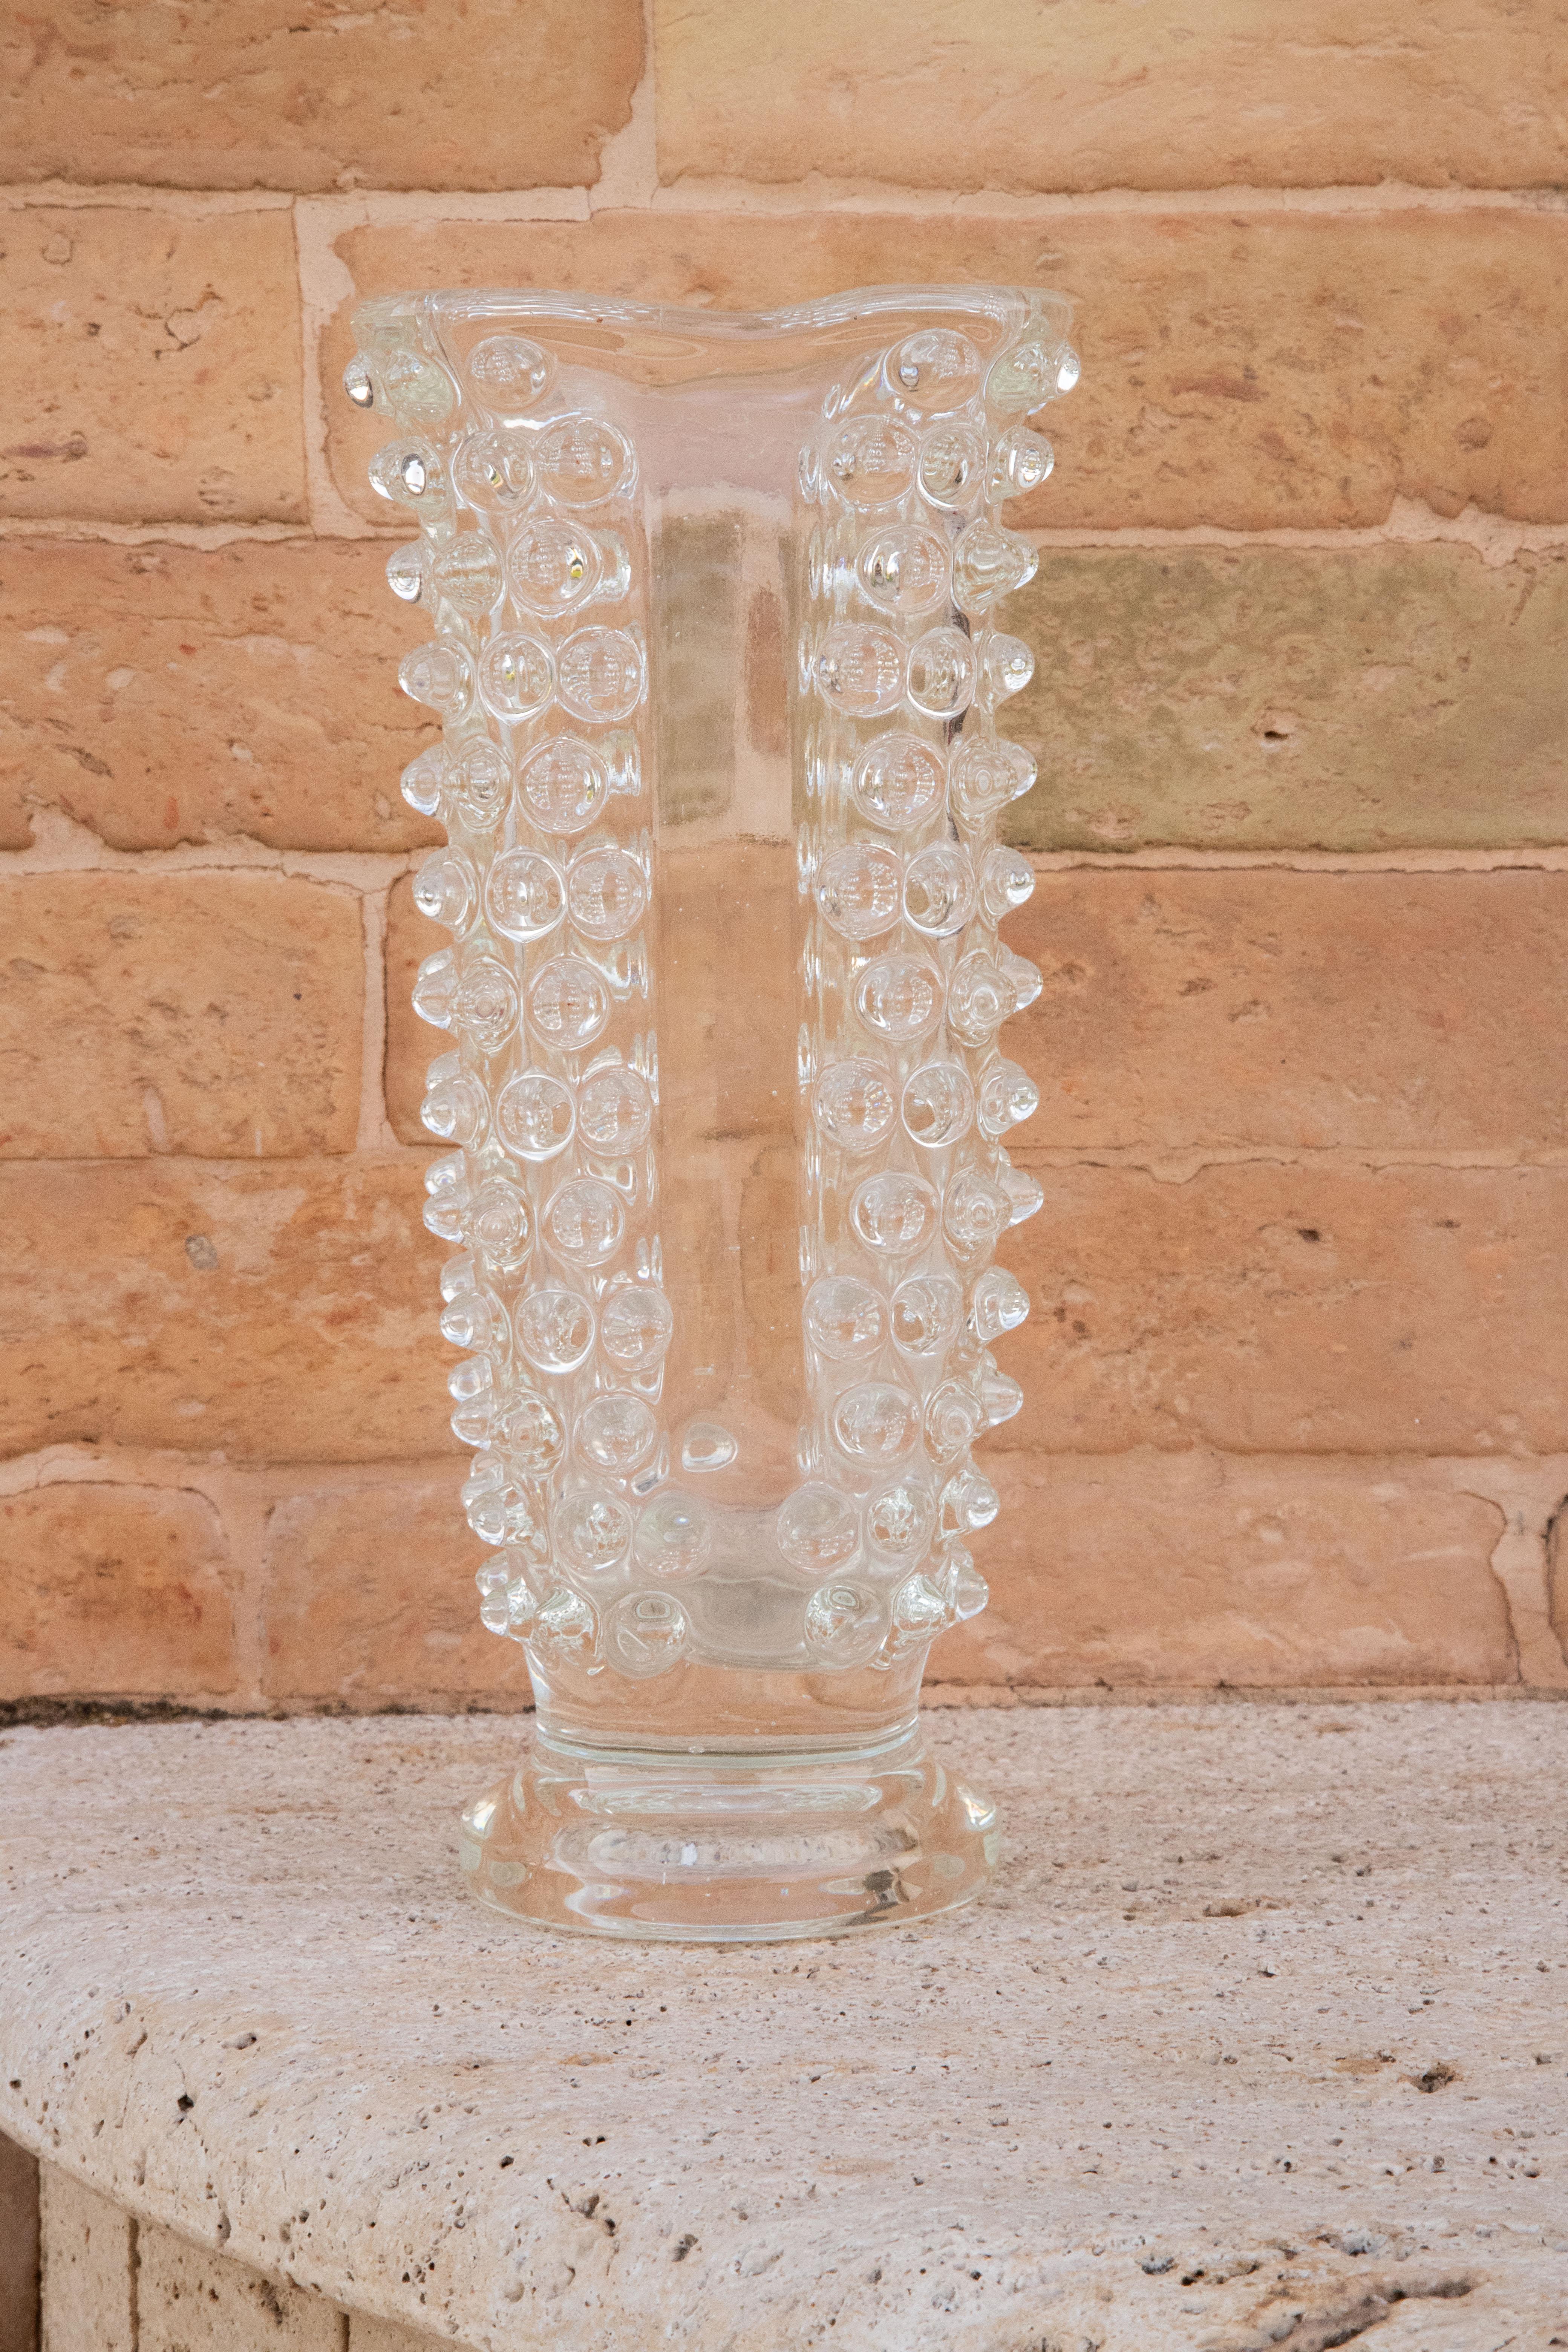 Mundgeblasene Vase aus Murano-Kristall, rostrato. Dieses wunderschöne Stück wurde in den 1940er Jahren in Italien von Ercole Barovier für Barovier&Toso hergestellt.

Dieser Artikel ist fantastisch dank der unglaublichen Verarbeitung des Rostrato